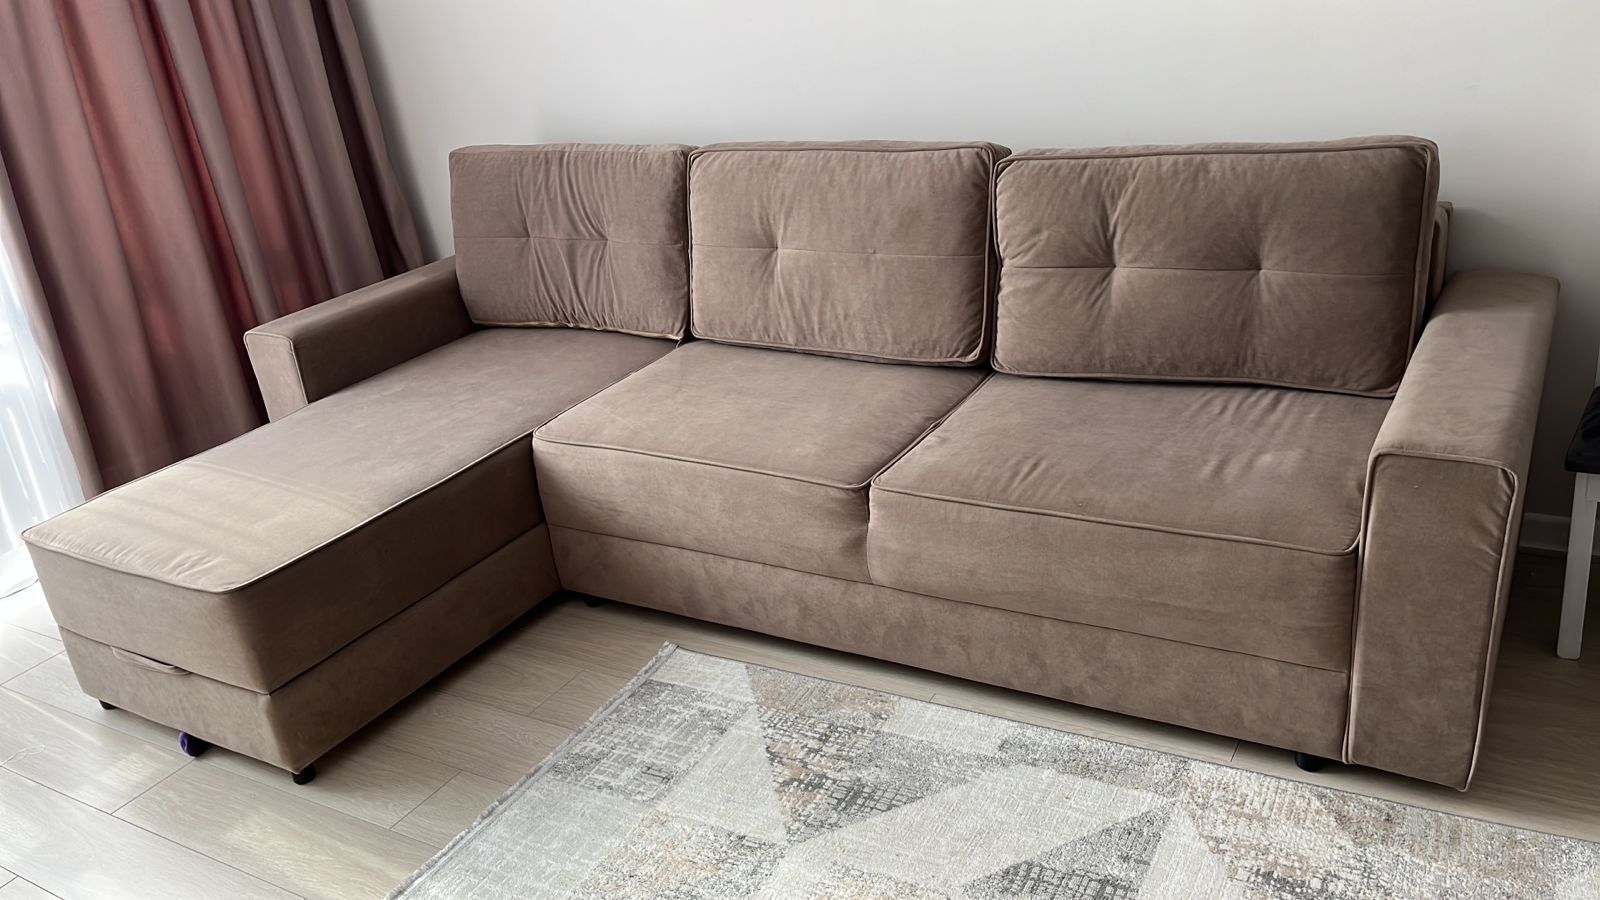 Продам отличный диван. Длина 3м×1м, угол 1,80м. Состояние как новое.